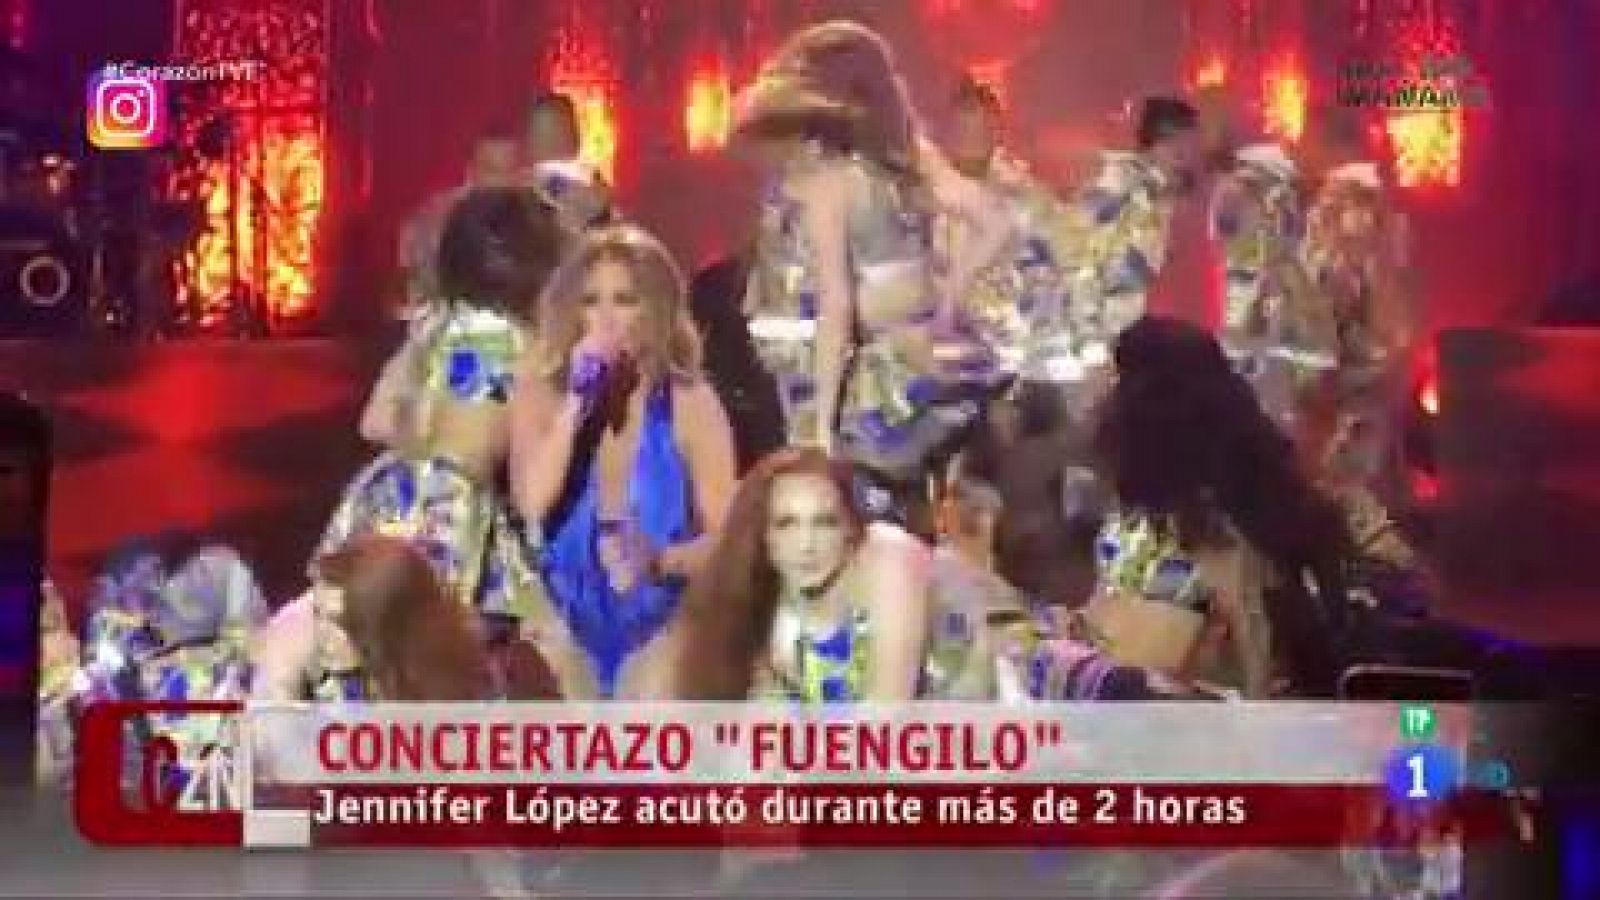 Corazón - El espectacular concierto de Jennifer López en Fuengirola